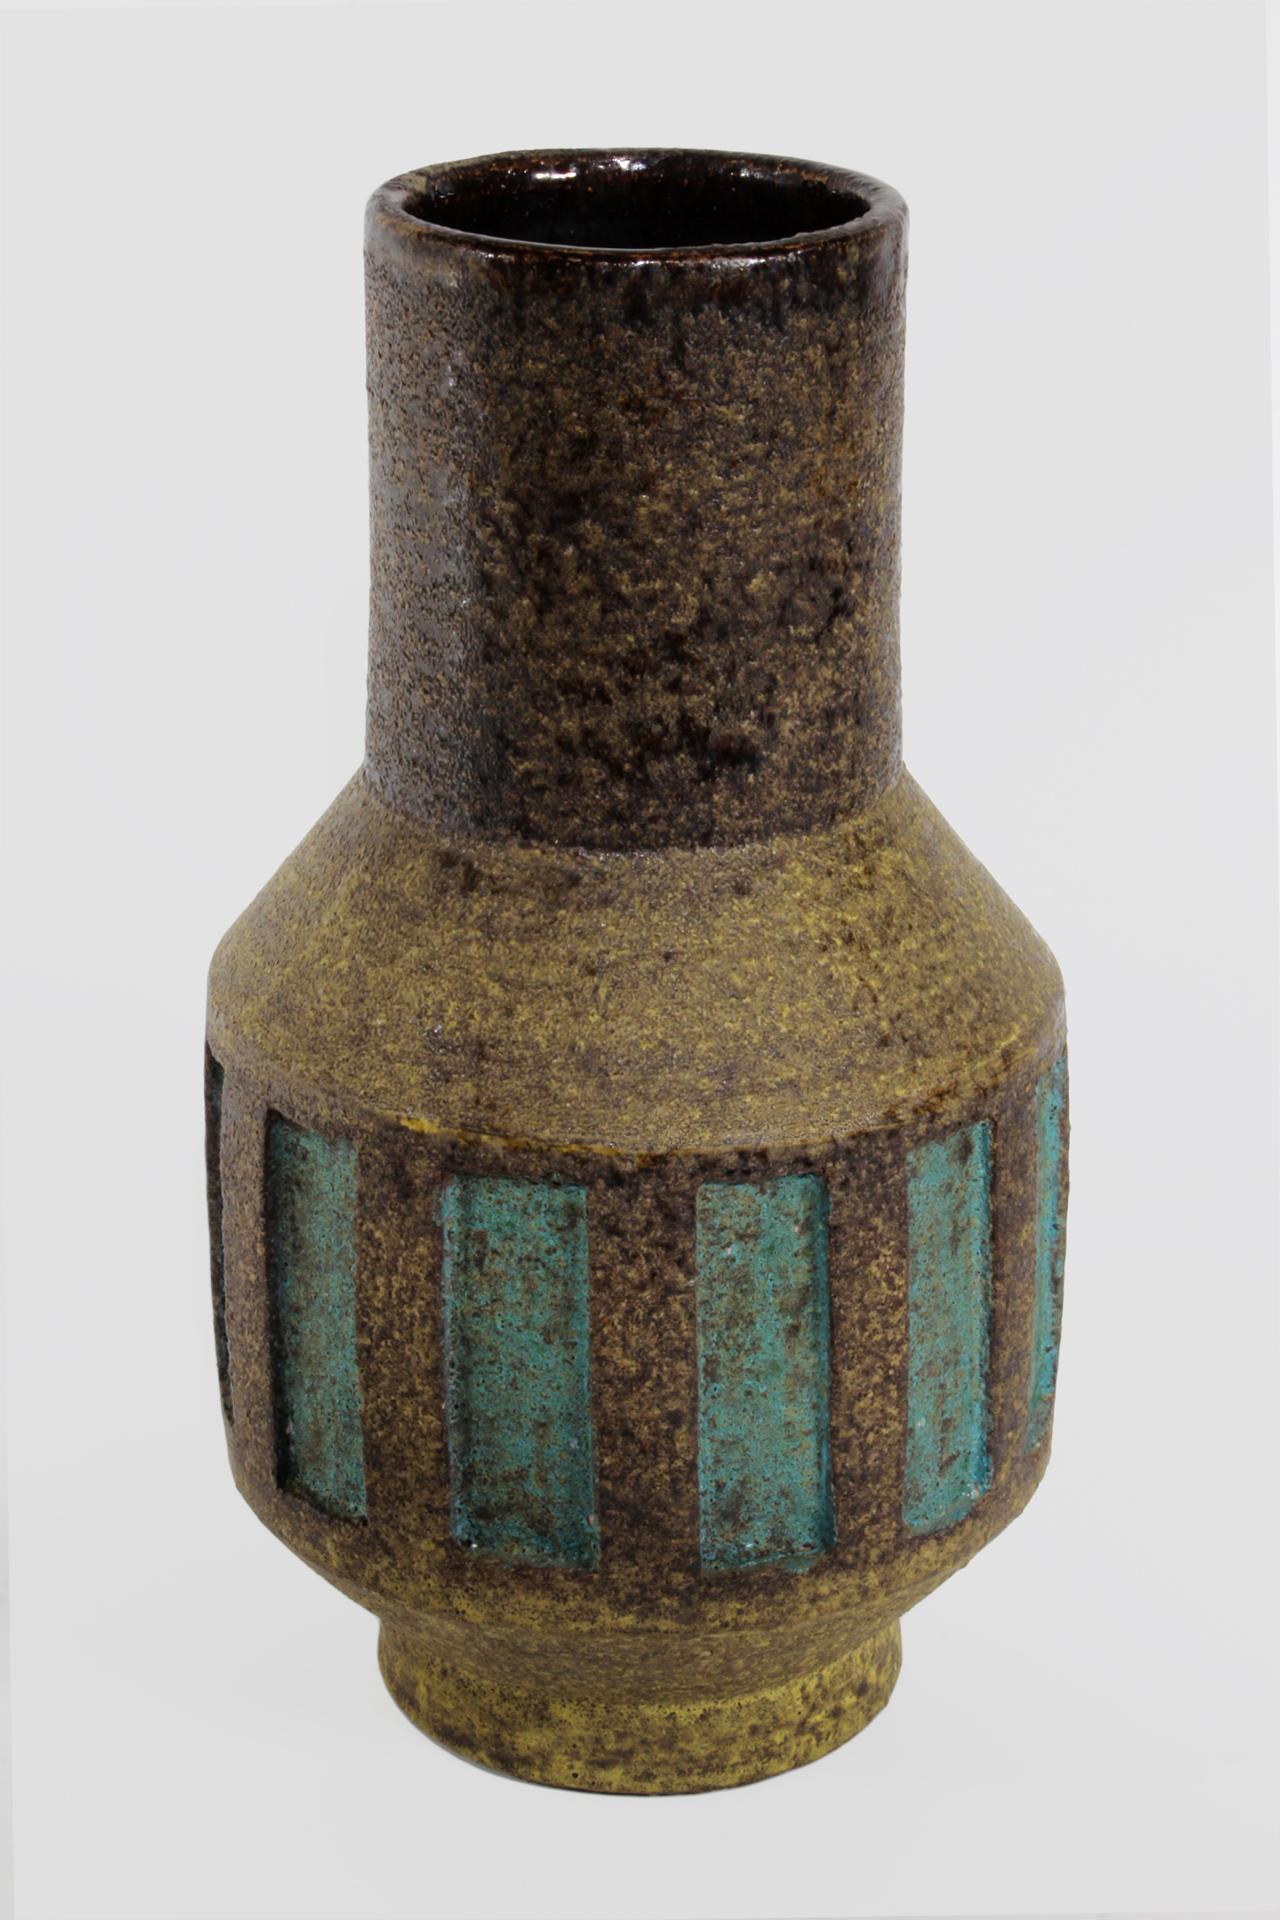 Un vase en grès tourné à la main par le maître céramiste Aldo Londi pour Bitossi, vers 1950. Chaque détail est subtil, de la surface fortement texturée du corps en argile à la coloration changeante de l'oxyde en brun, jaune et noir, en passant par